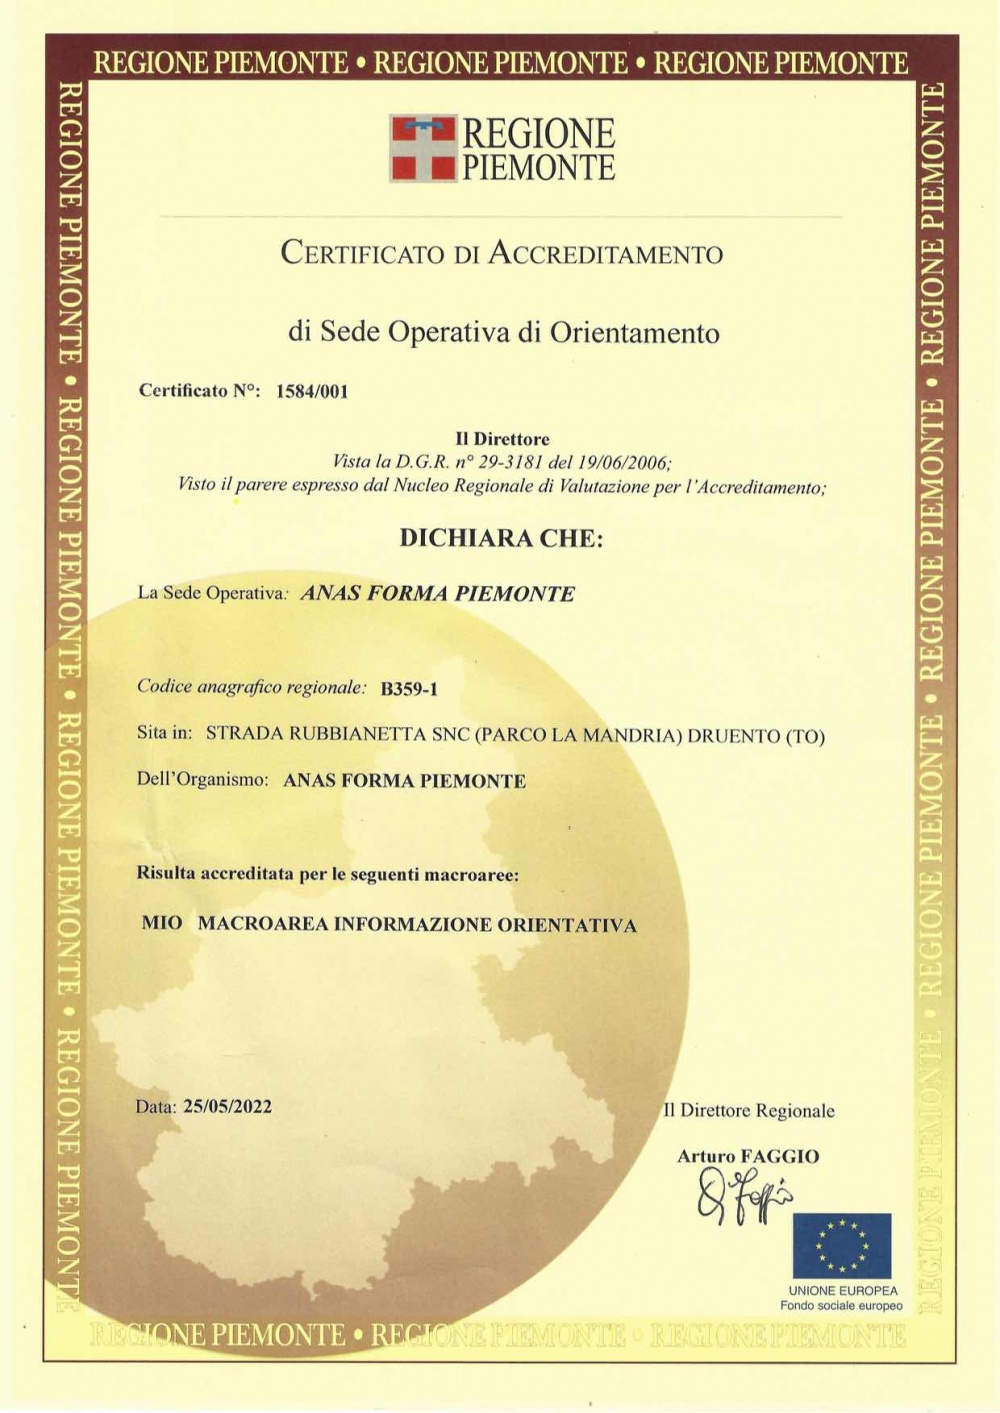 Il certificato di accreditamento per la Macroarea Informazione Orientativa